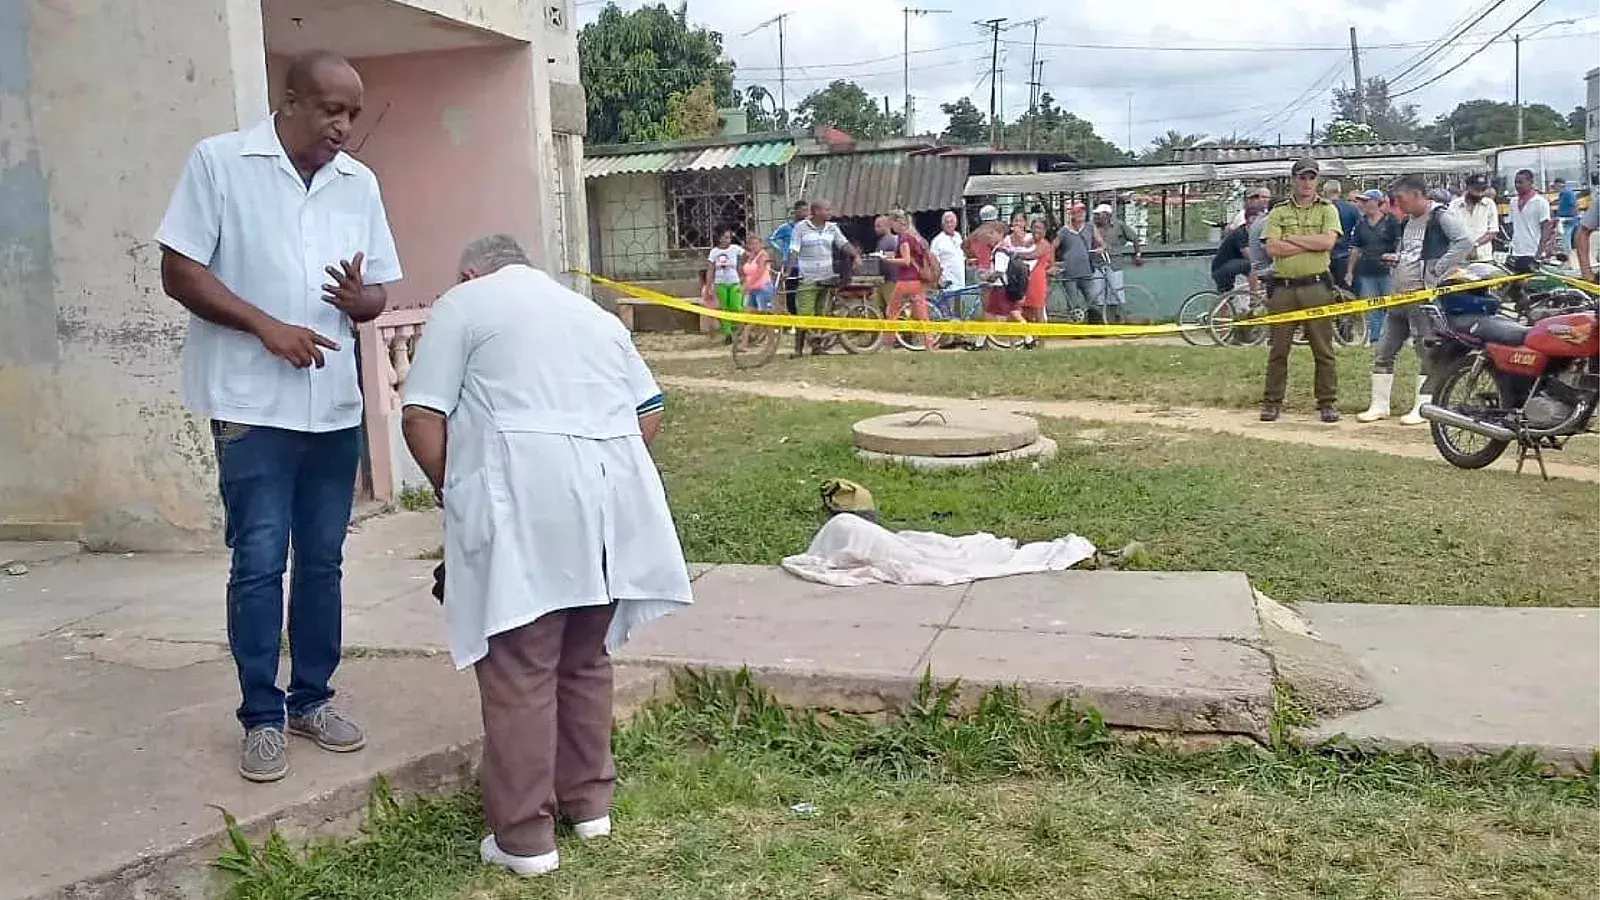 Cuerpo de Padrón en el suelo, muerto, tras caer de edificio en Colón